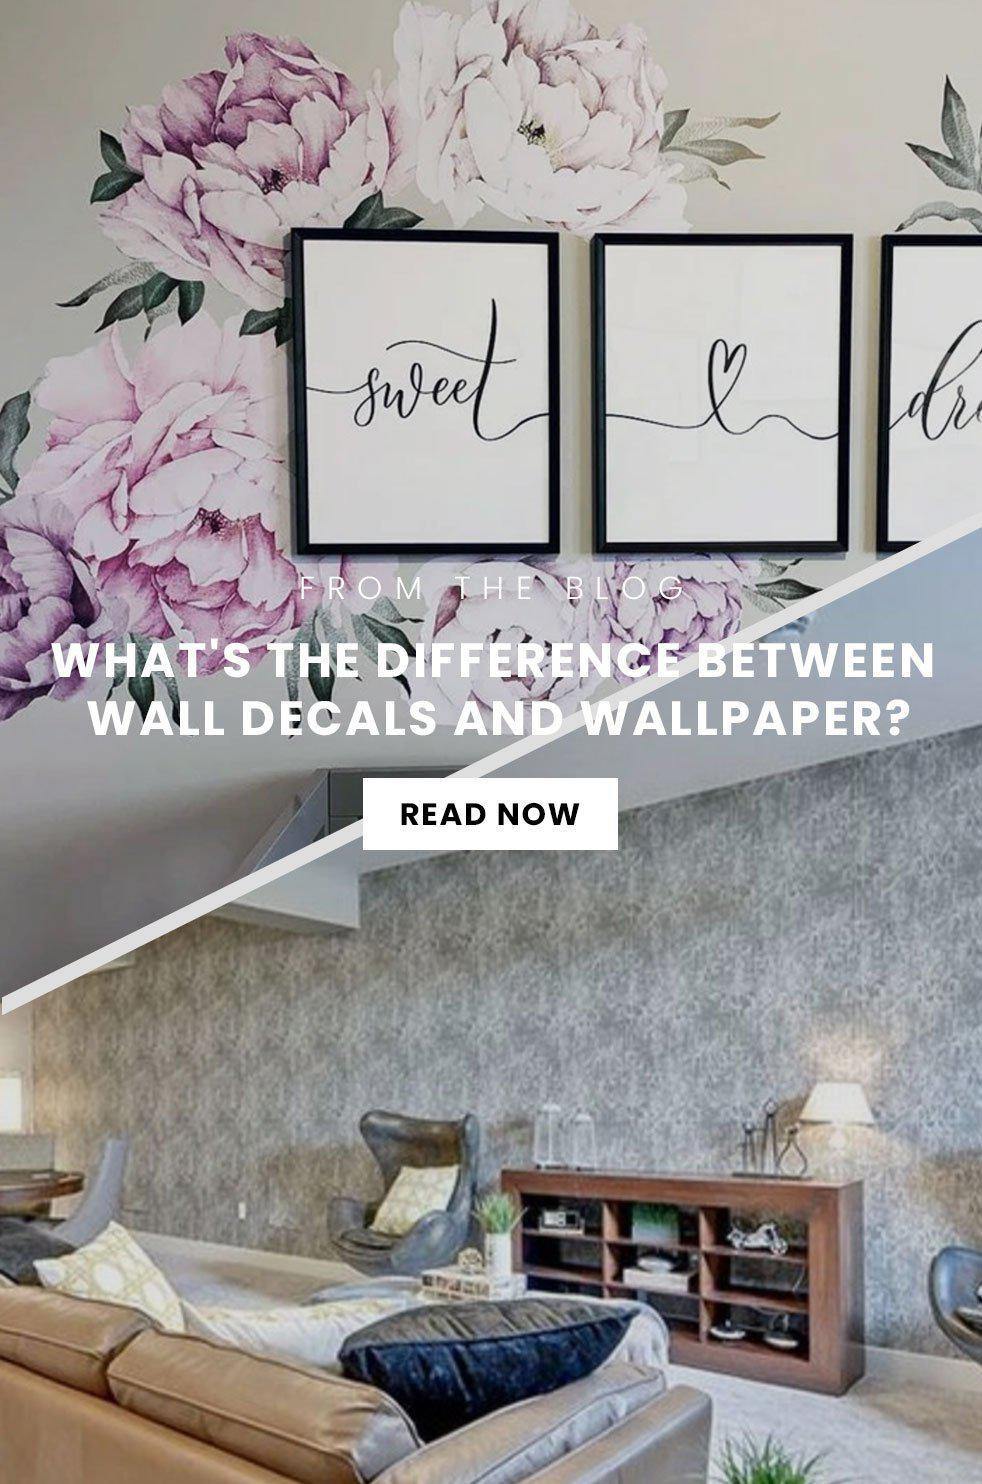 Between Wallpapers